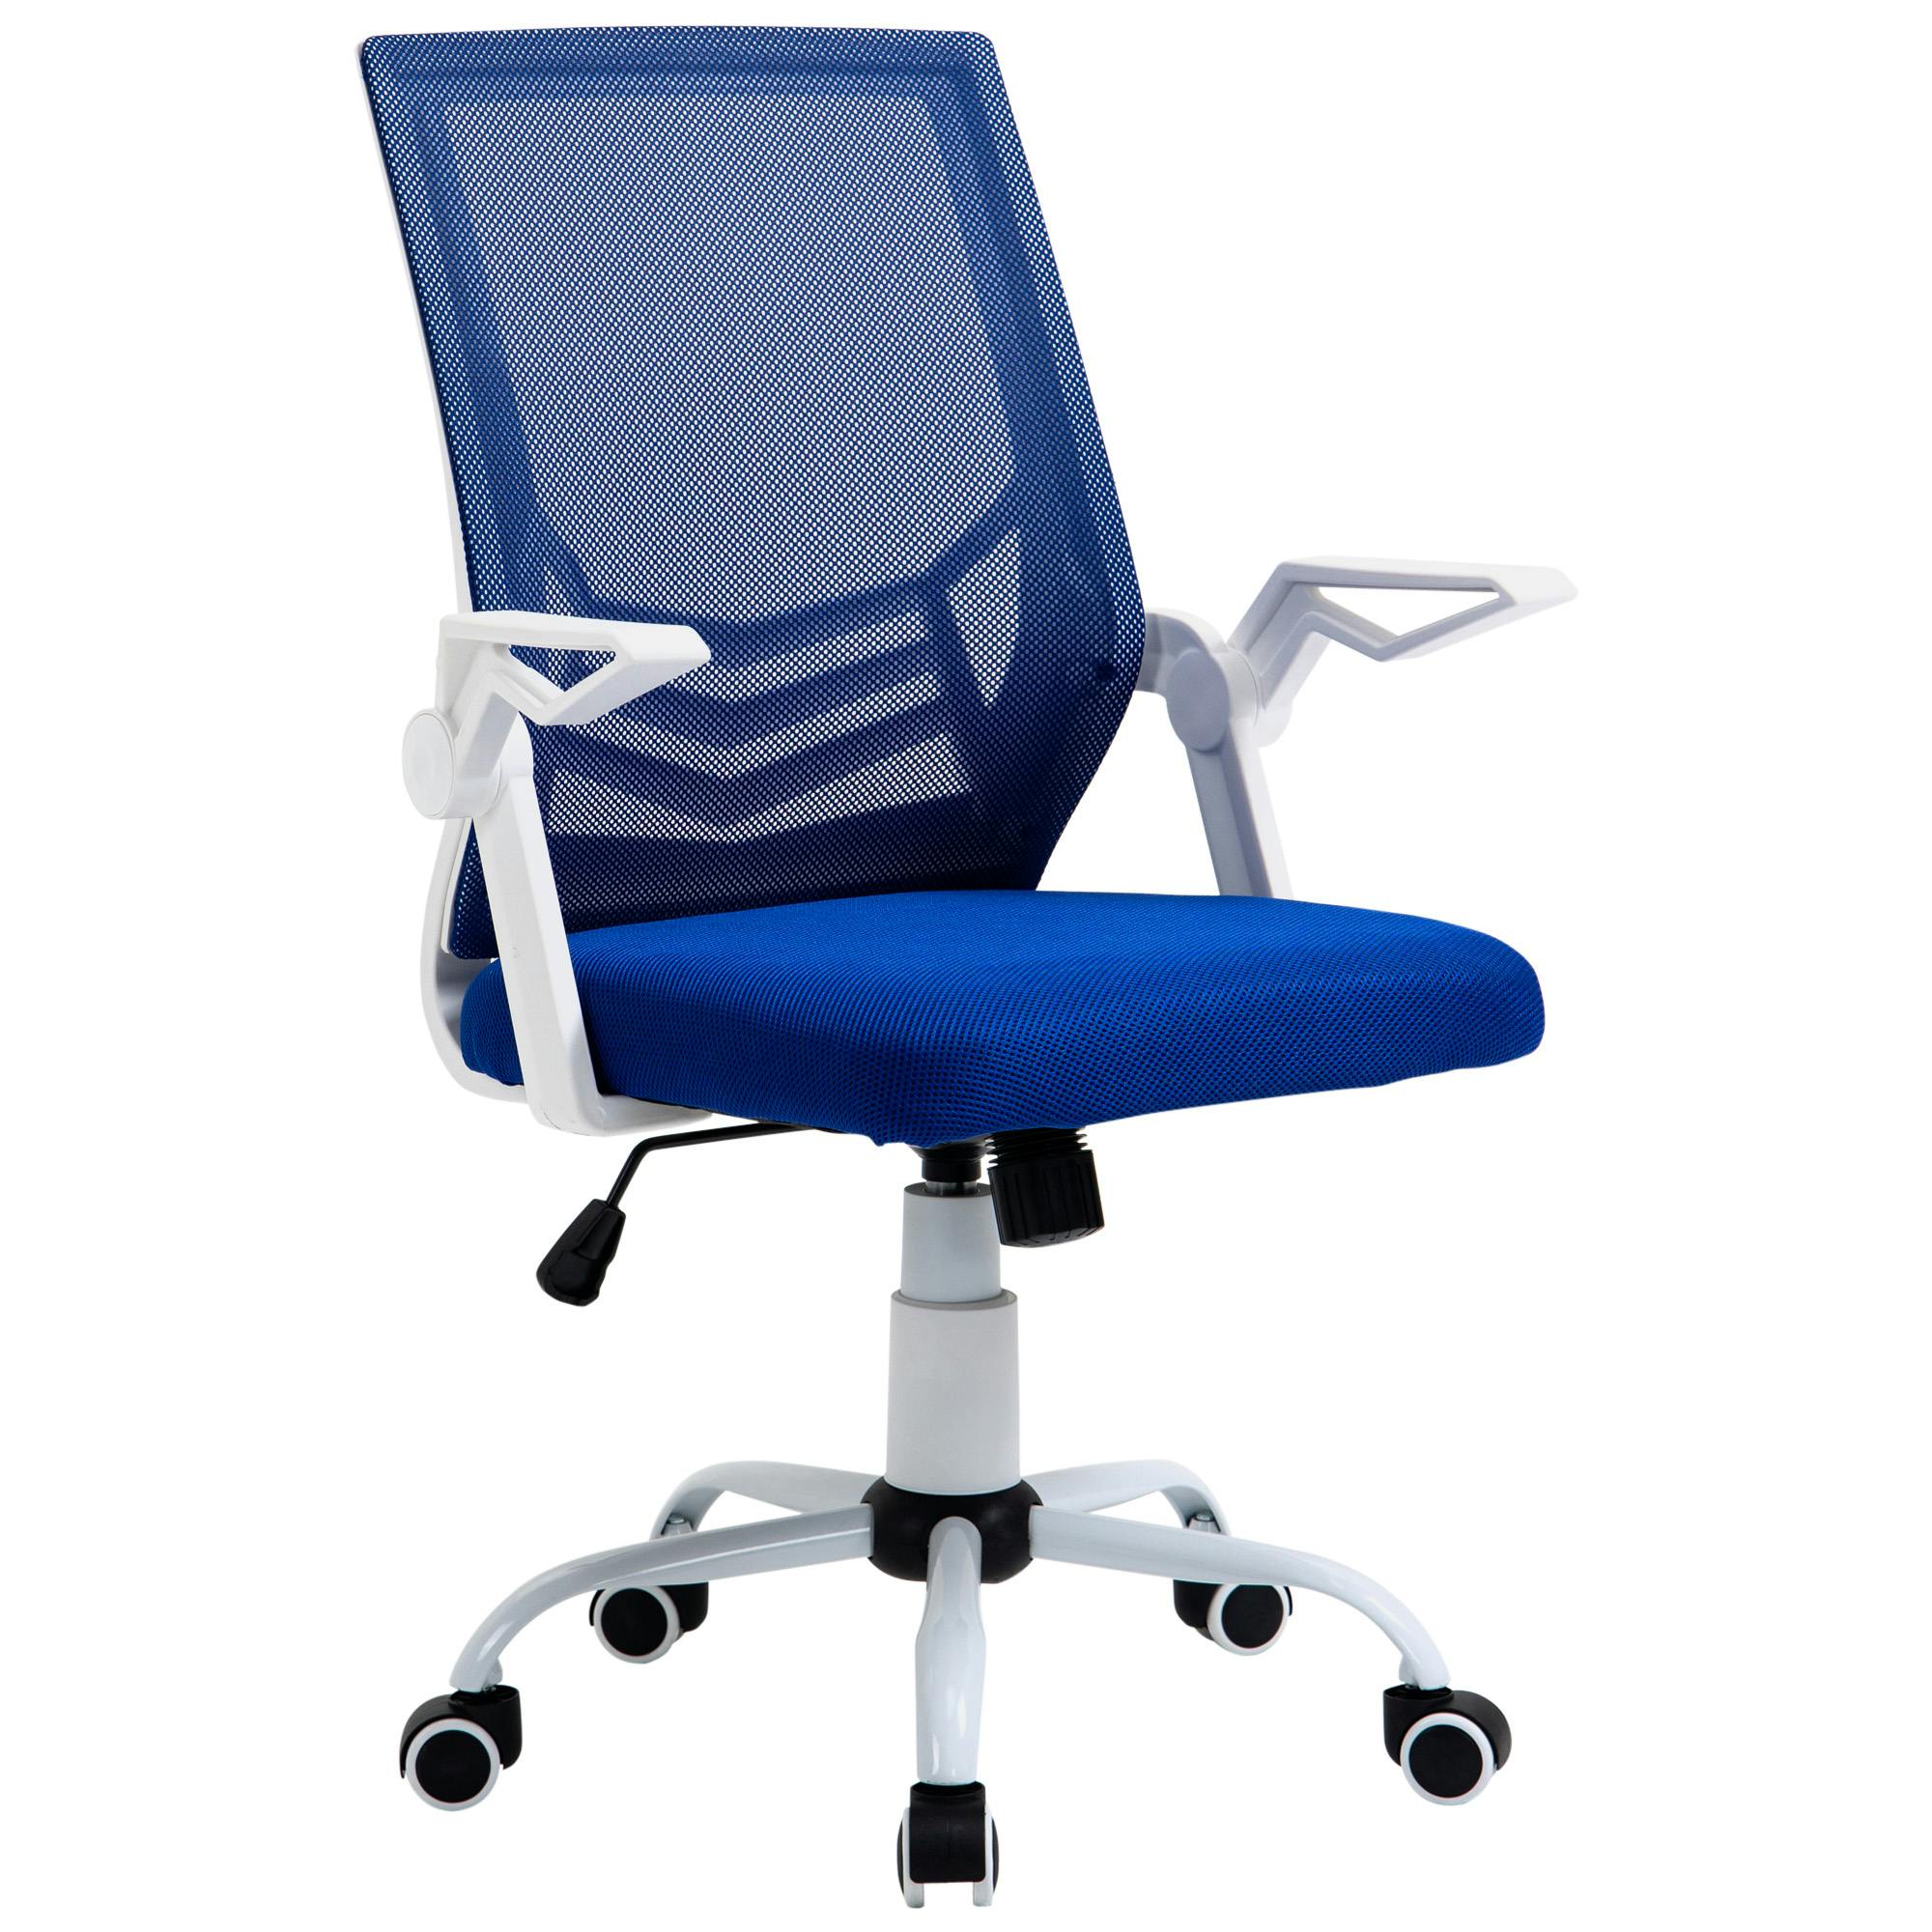 Silla de oficina ergonómica con soporte para el respaldo, silla de oficina  para computadora con reposabrazos abatible, soporte lumbar, ruedas para